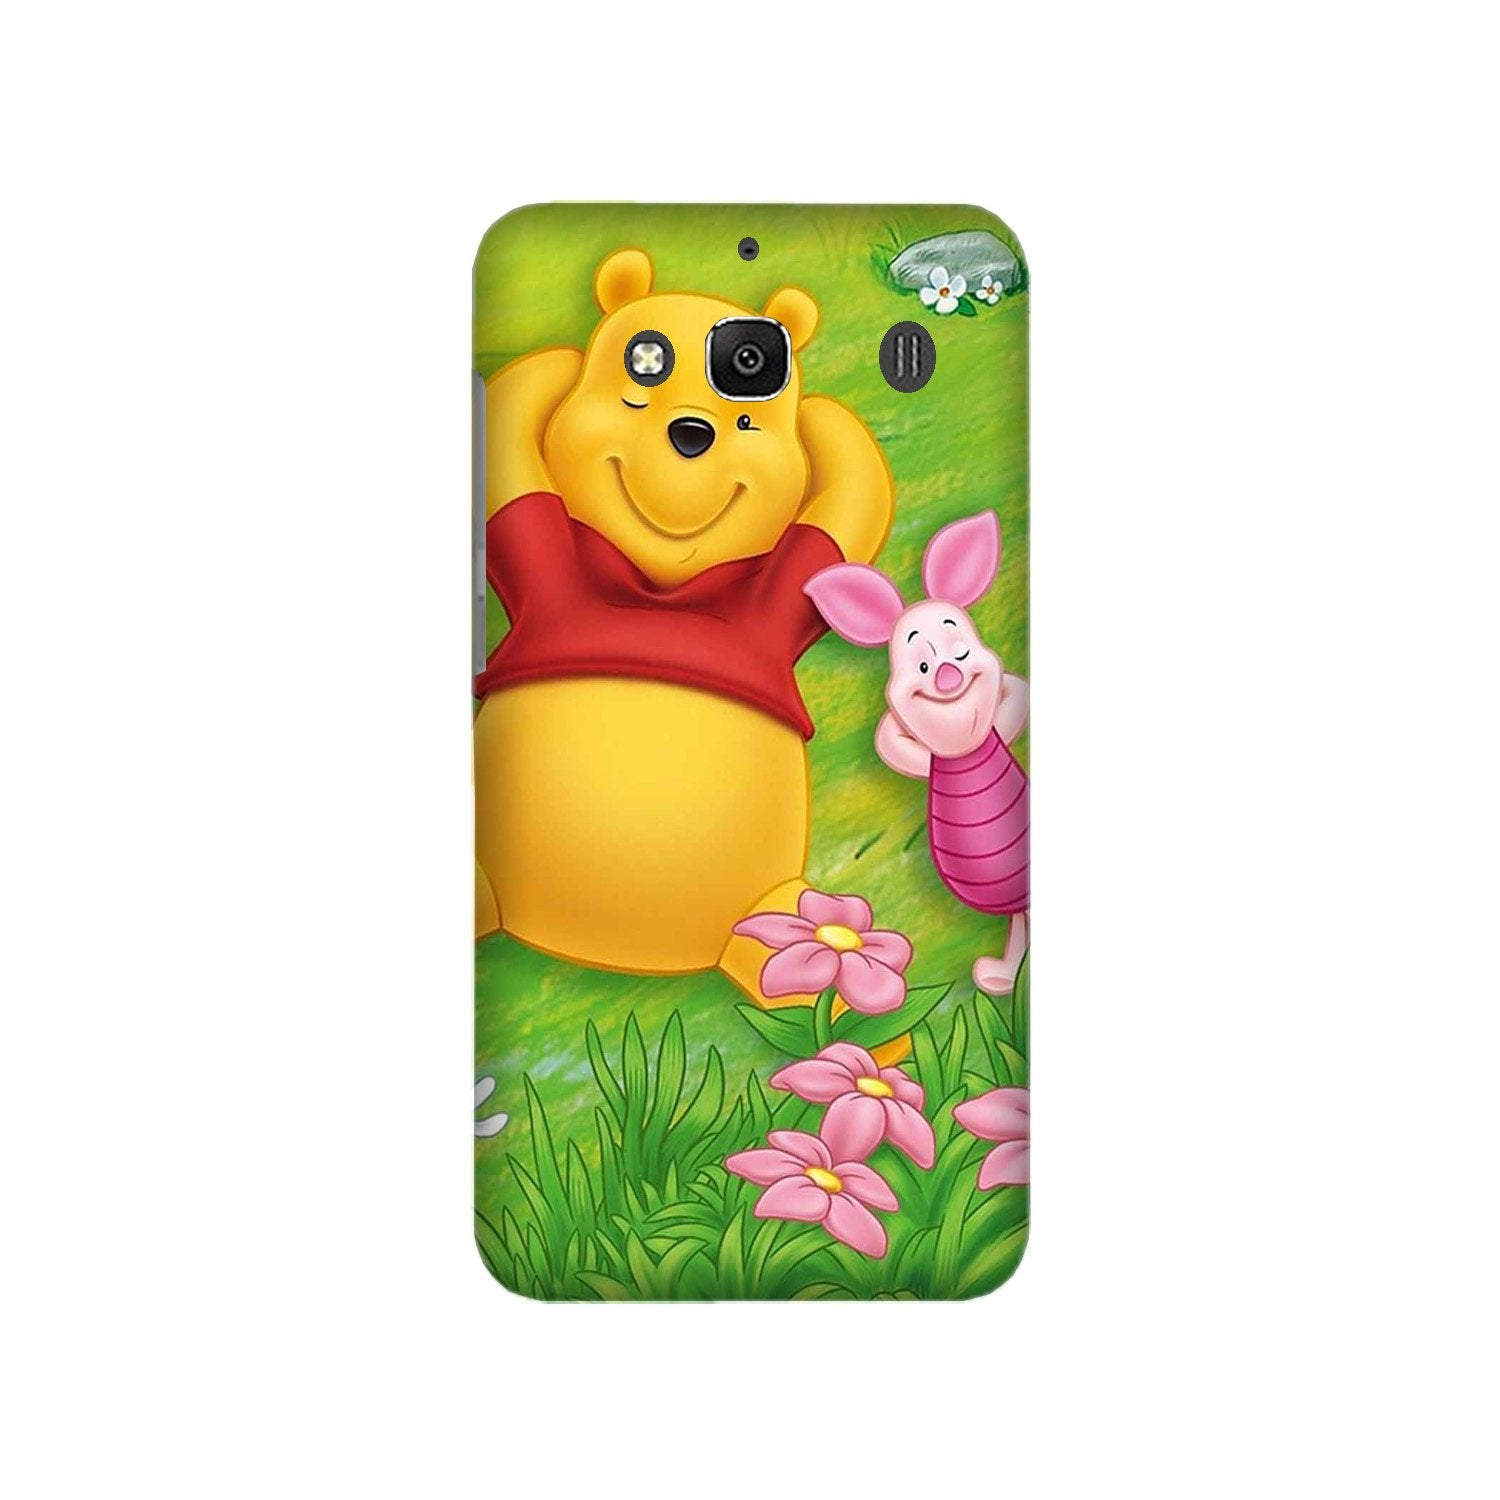 Winnie The Pooh Mobile Back Case for Redmi 2 Prime  (Design - 348)